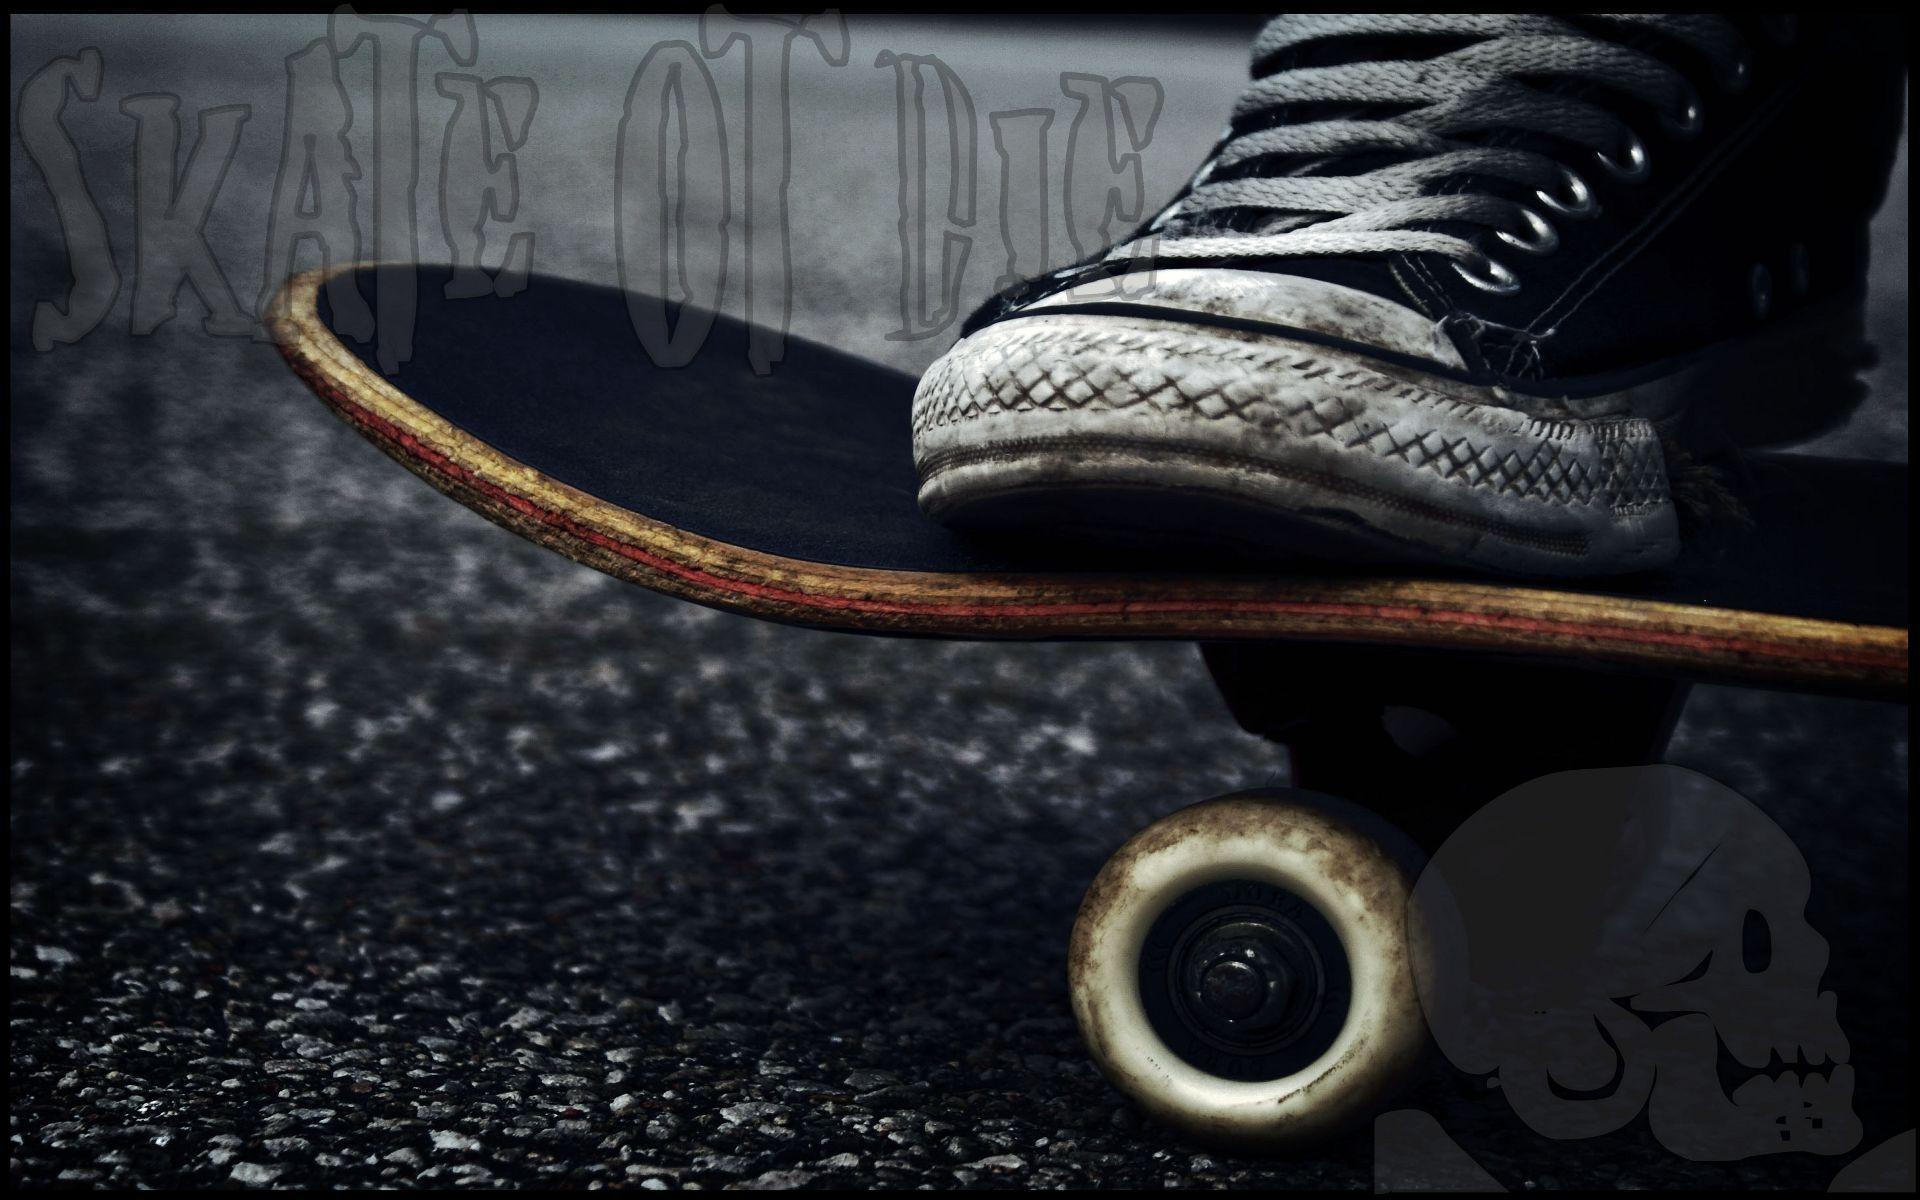 JOB 39 Skater Wallpaper, Skater Full HD Picture and Wallpaper